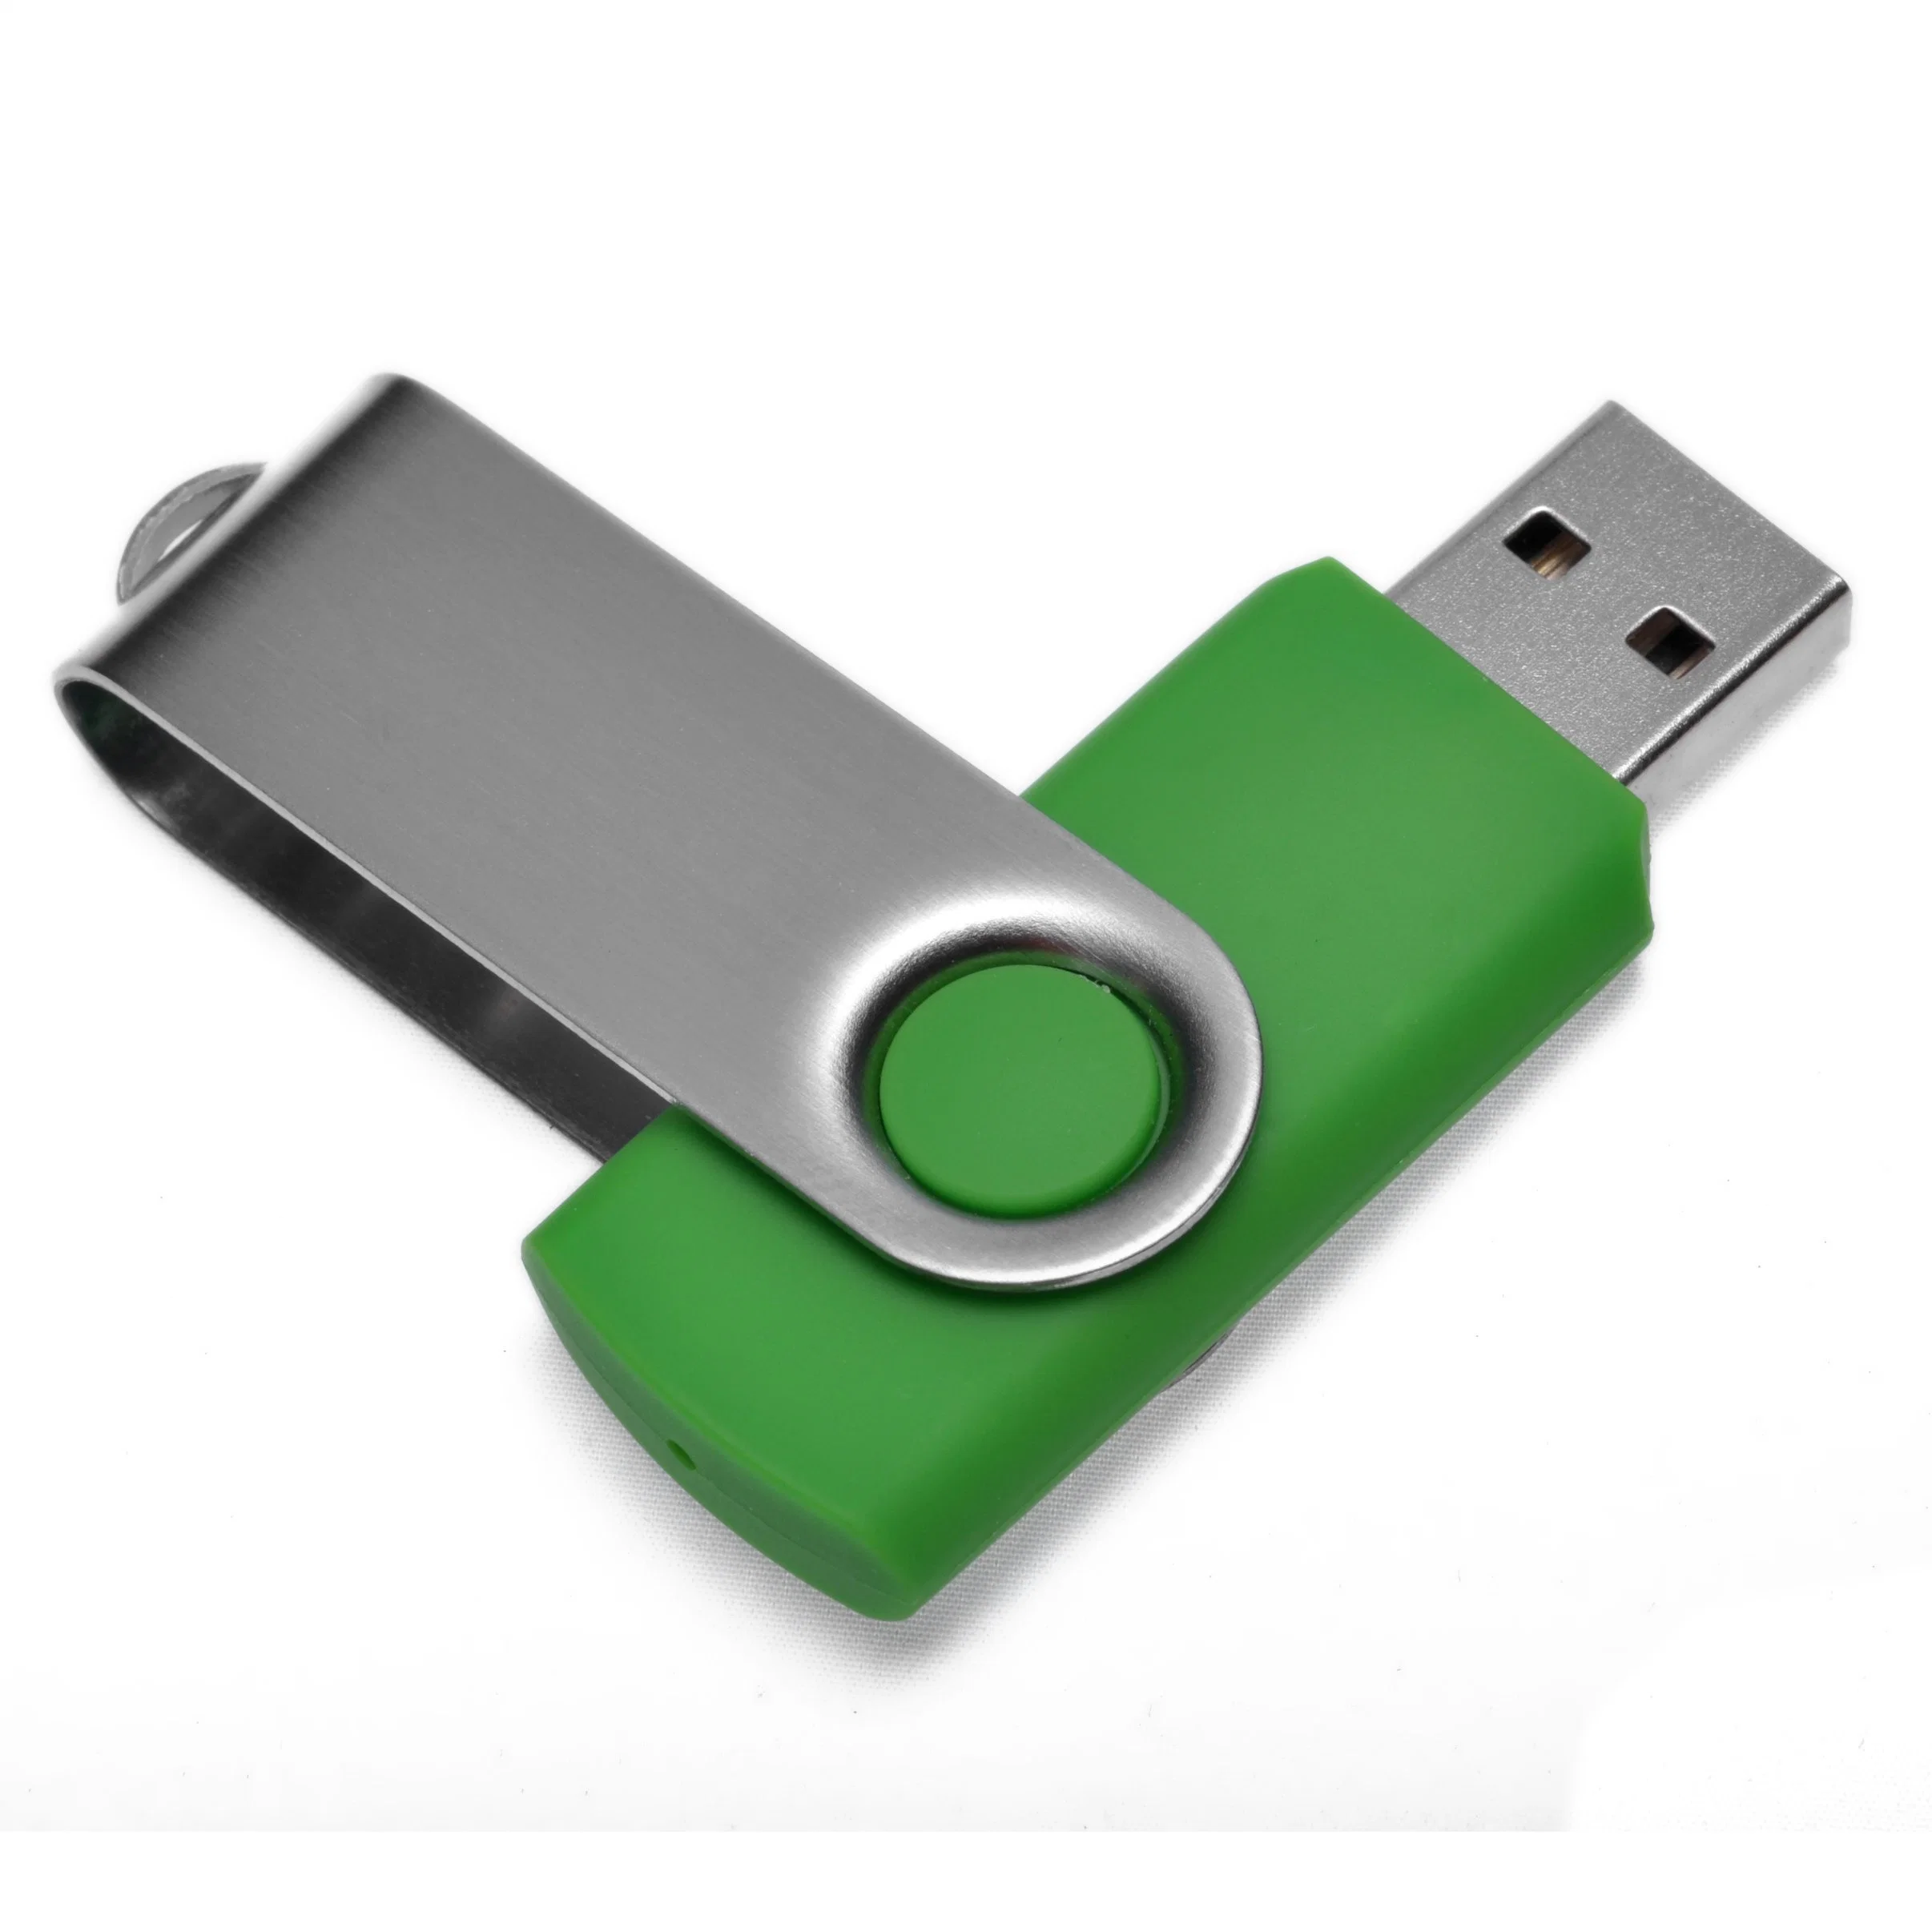 Classic Swivel USB Flash Drive USB 2.0 4GB 8GB 16GB High Speed USB 3.0 32GB 64GB 128GB Colorful USB Pendrive USB Stick